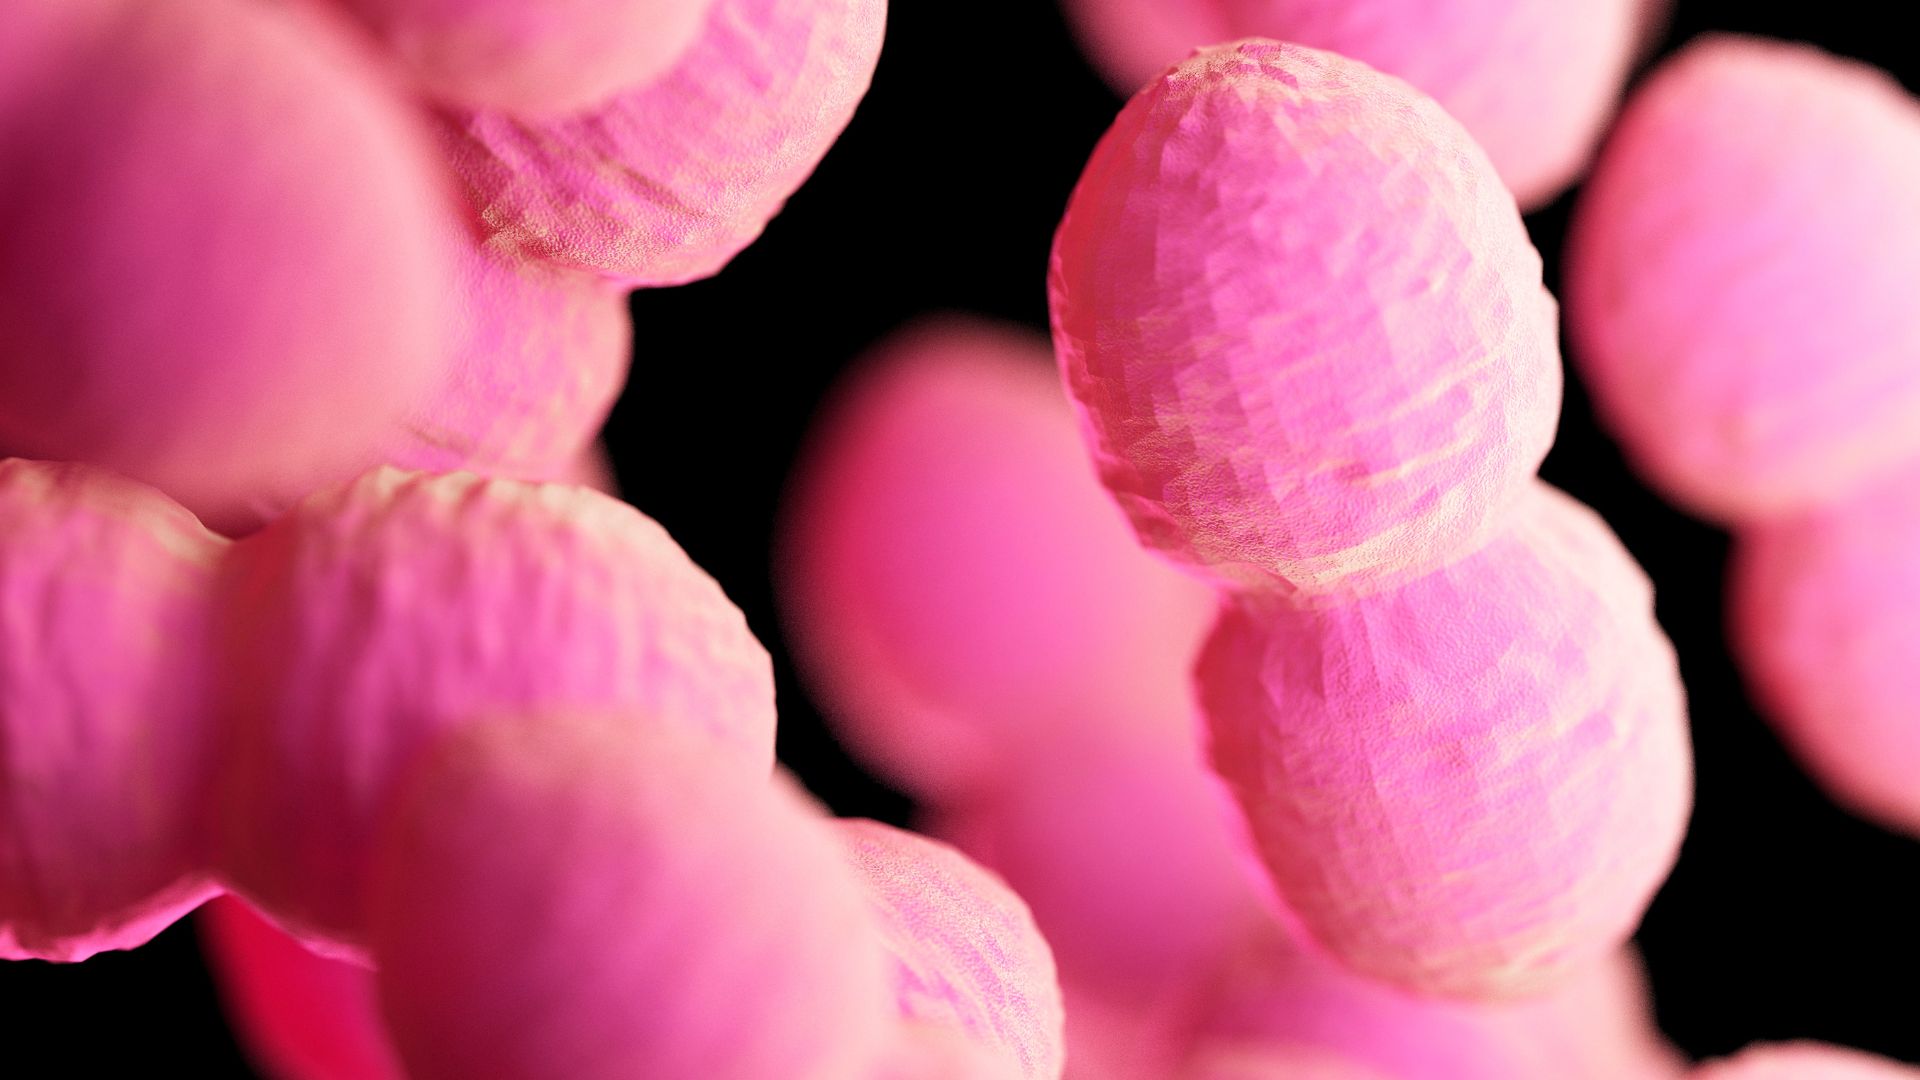 Abbildung von Enterokokken-Bakterien, die in leuchtendem Pink vor schwarzem Hintergrund dargestellt sind